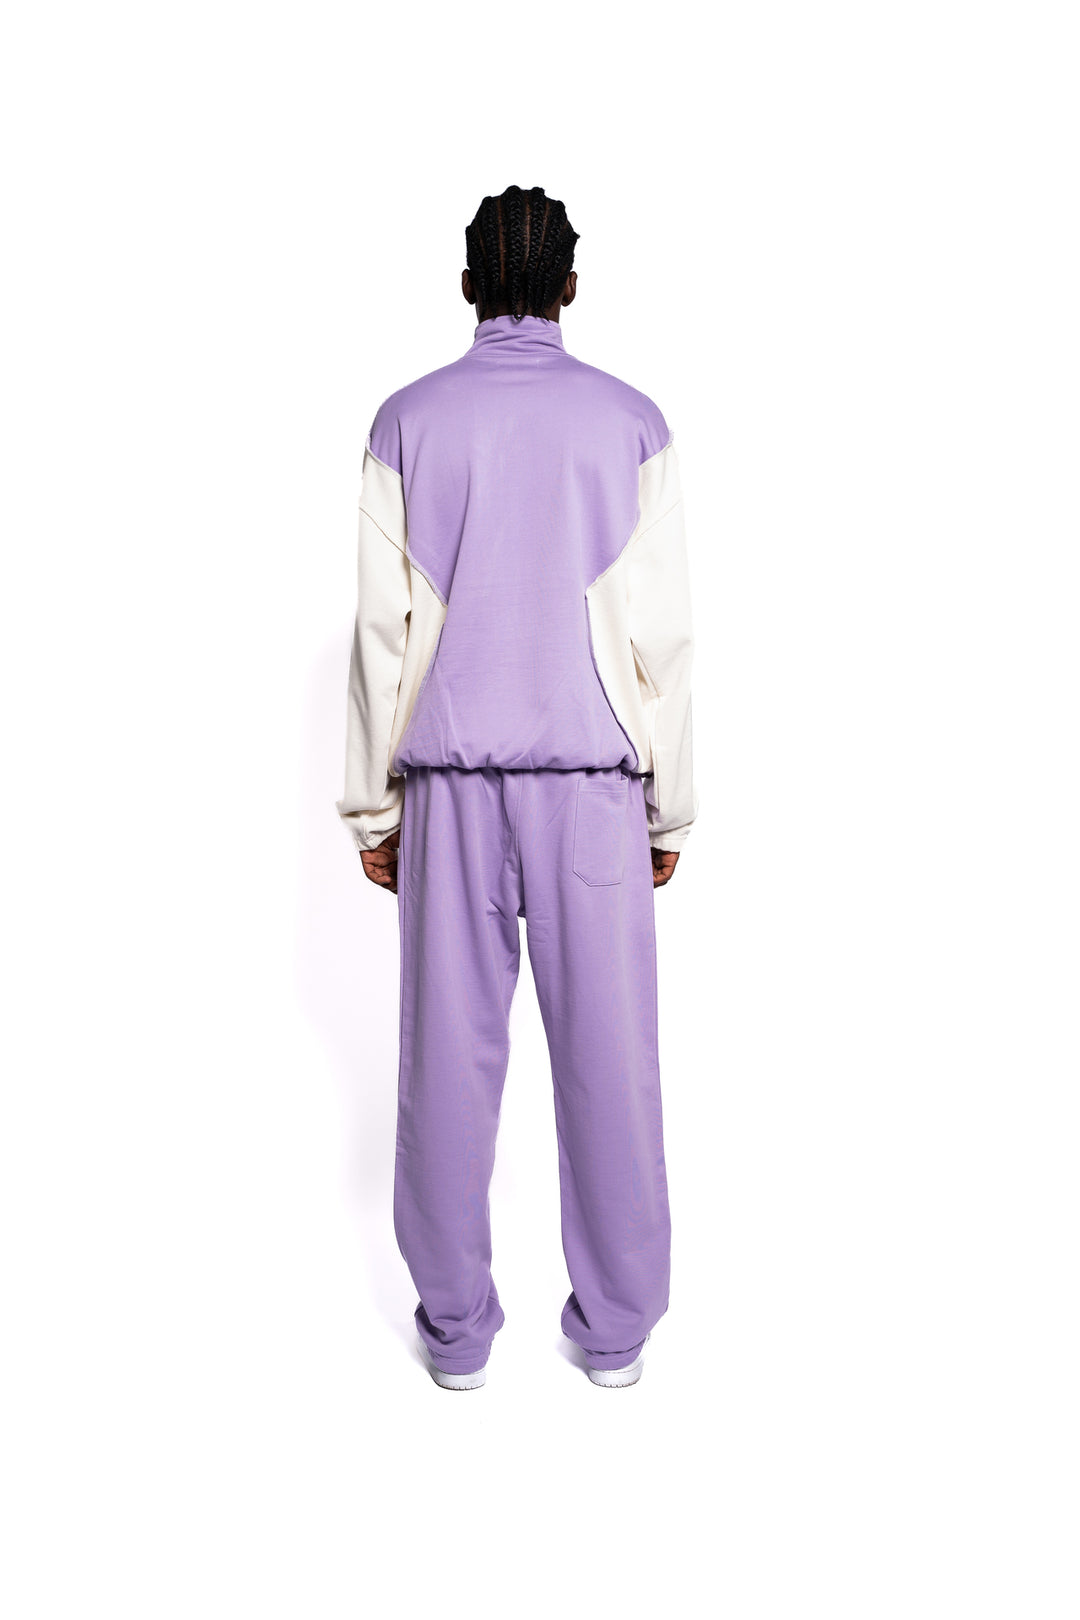 Rückansicht des Decider Streetwear-Ensembles, pastell-lila Sweatpants mit Hosentasche und Hoodie